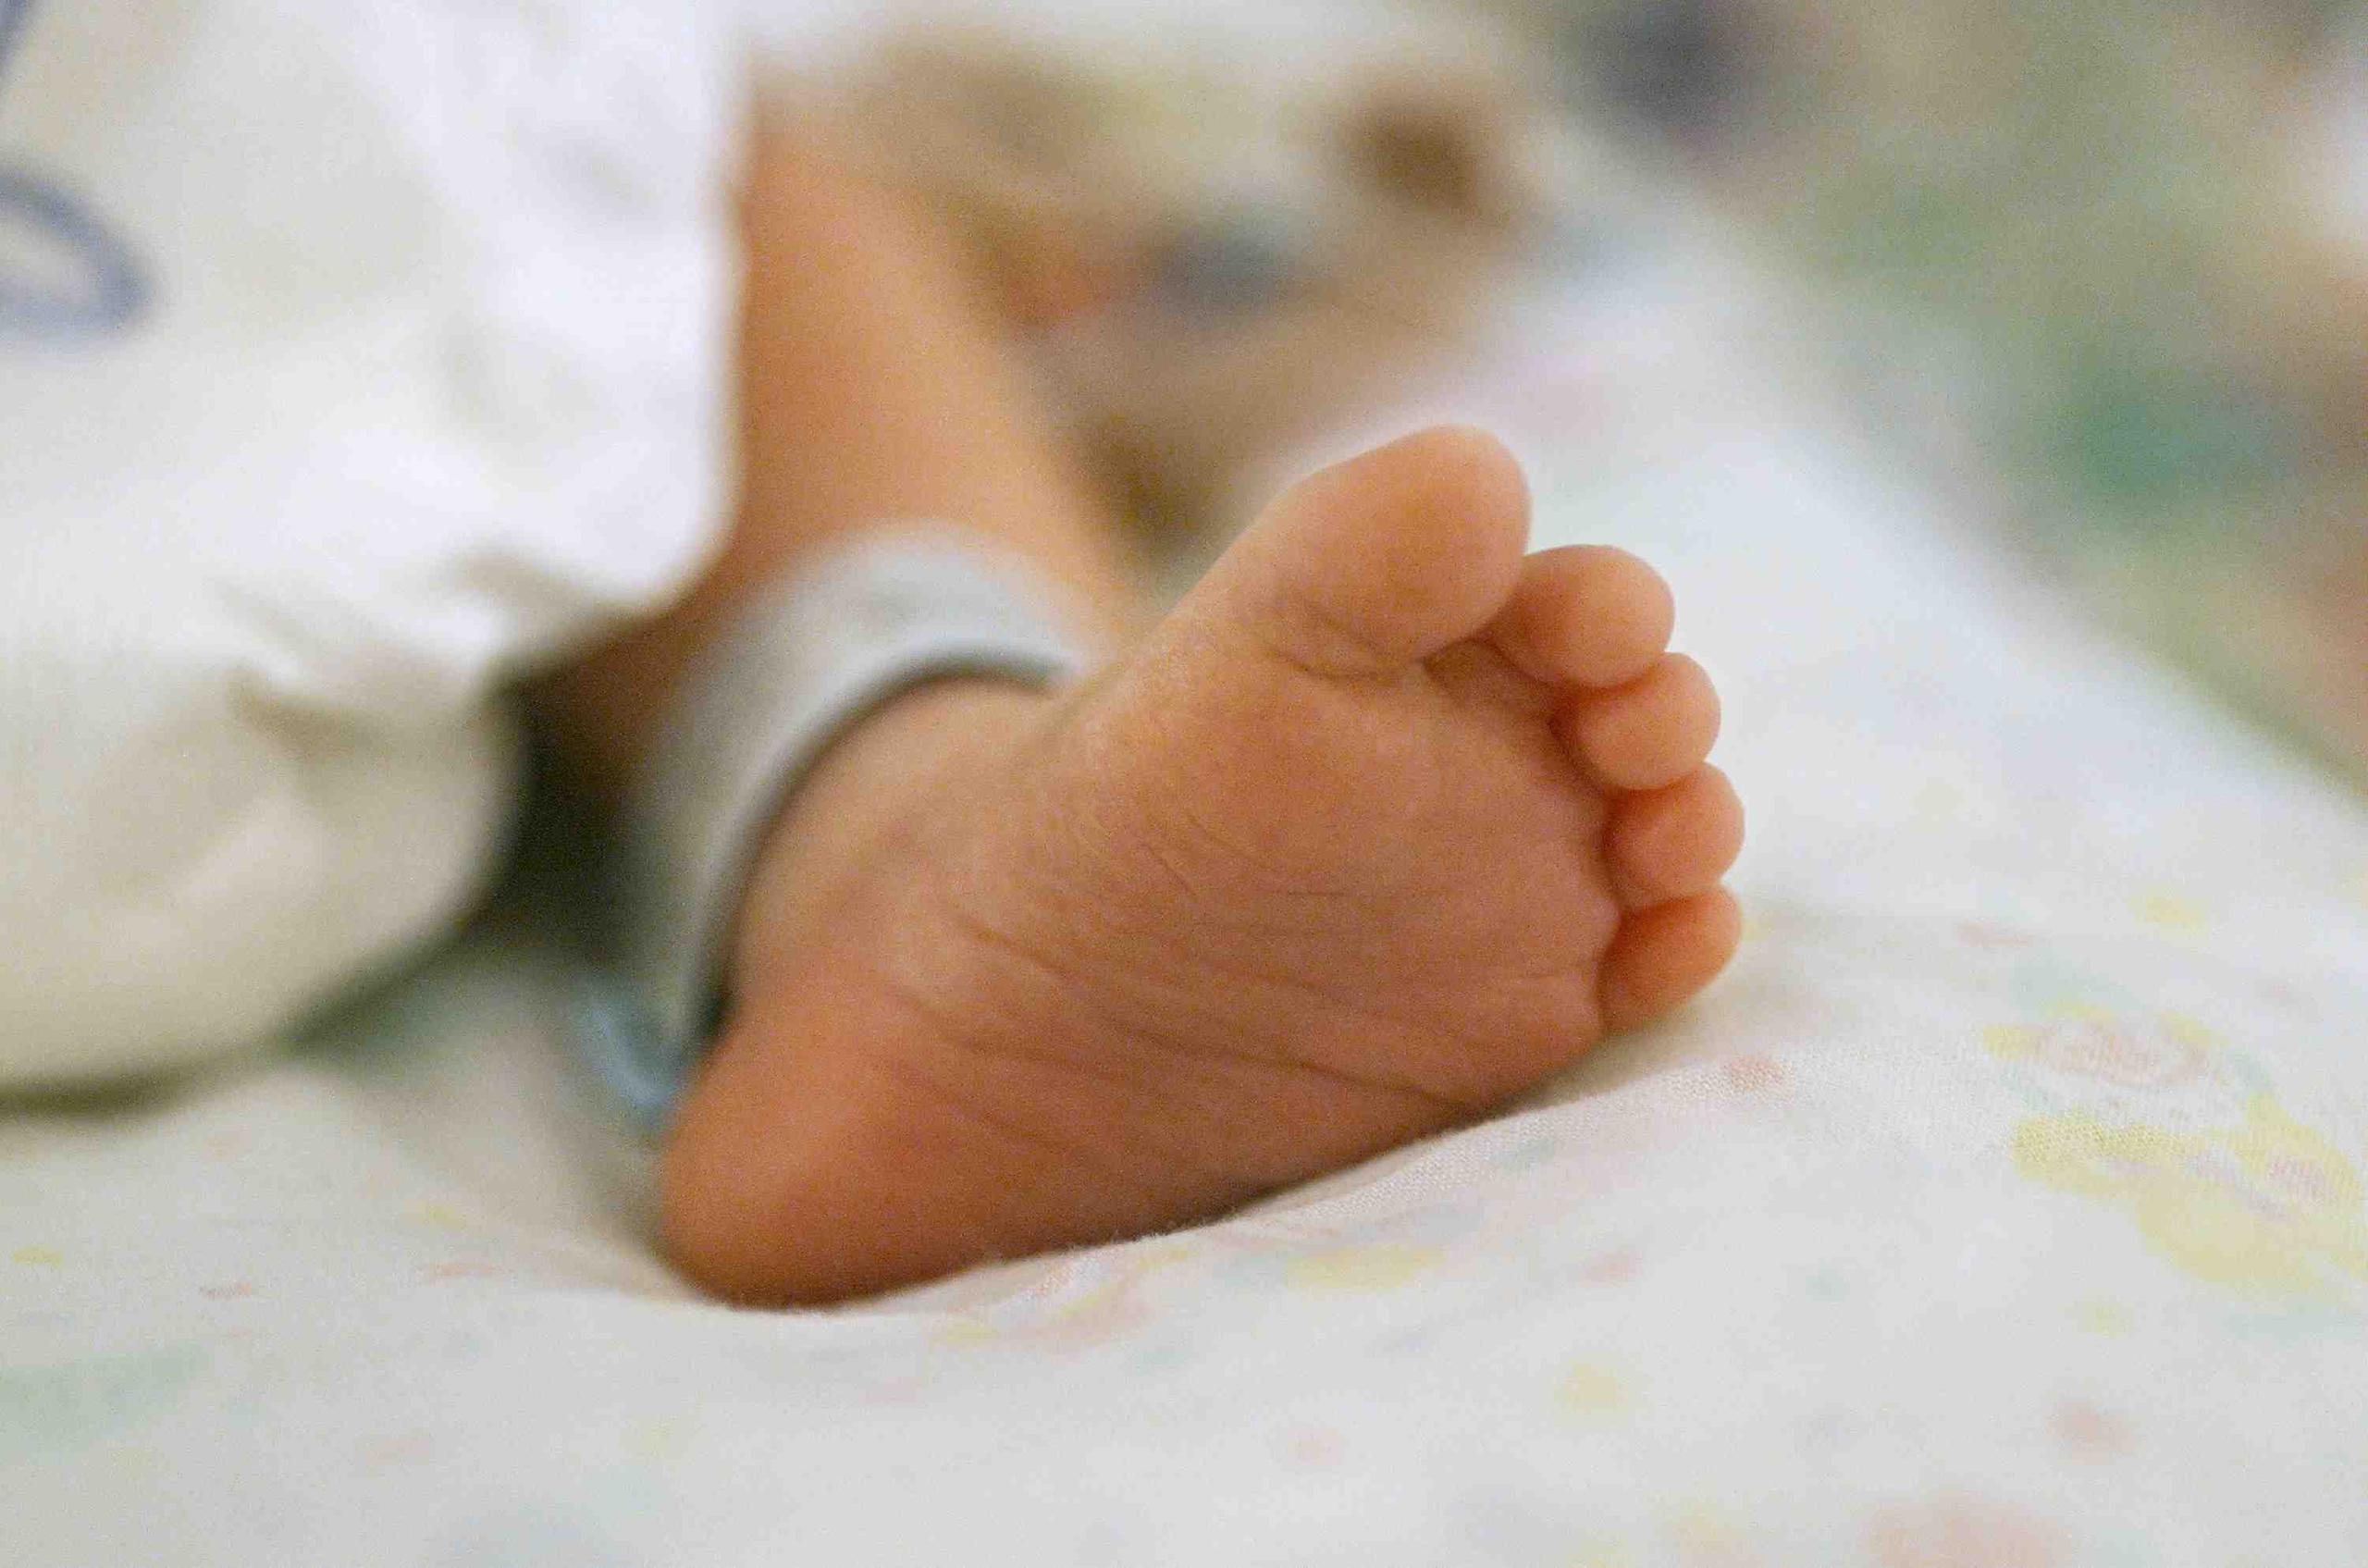 Estudios realizados a la bebé encontraron edema cerebral, así como fracturas en la pierna izquierda, específicamente en la tibia y el fémur. (GFR Media)